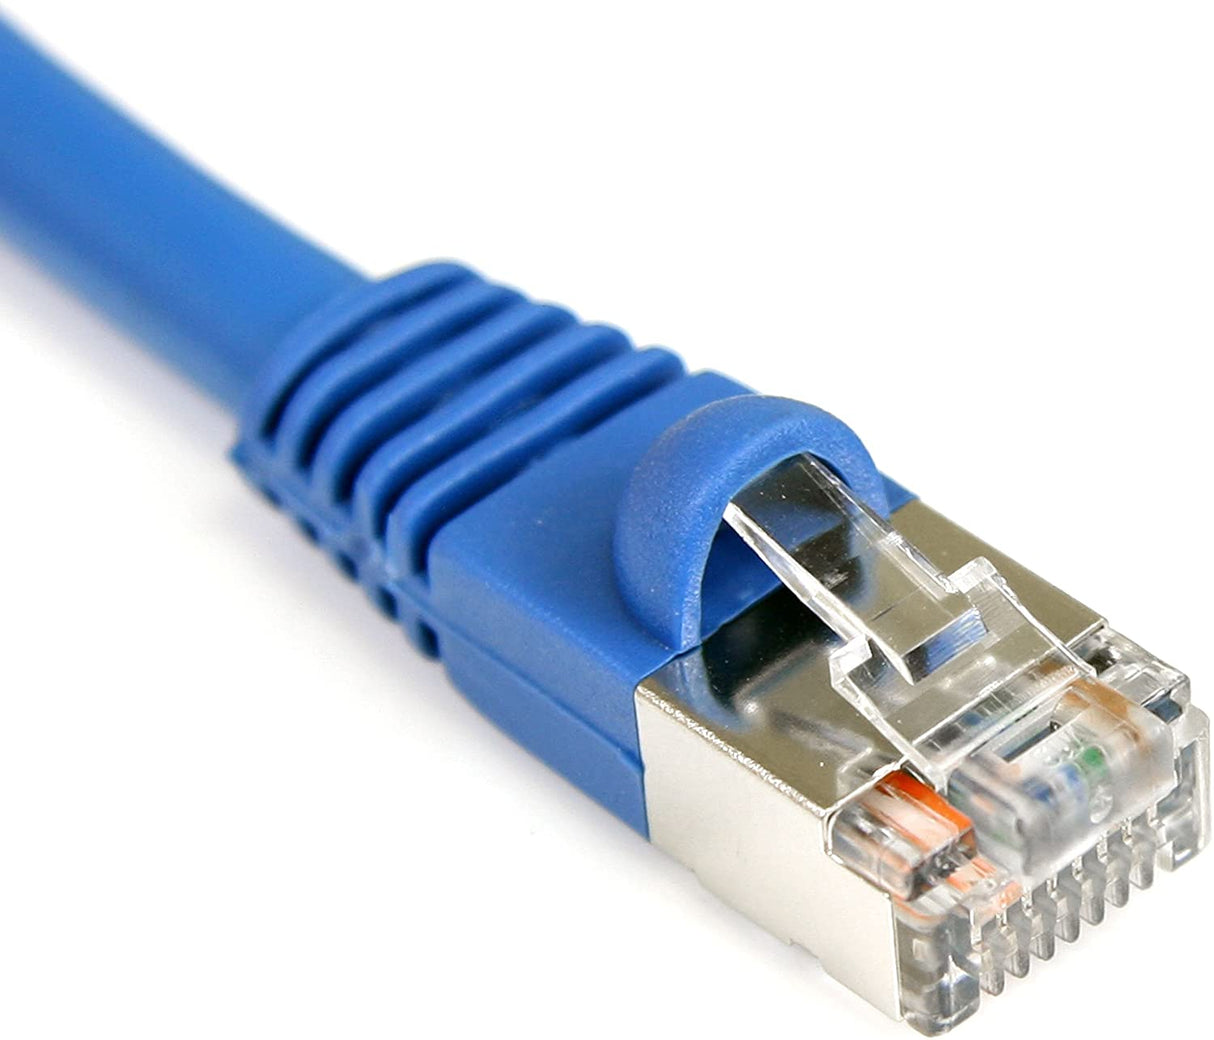 StarTech.com 50 ft. (15.2 m) Cat5e Ethernet Cable - Patch Cable - Shielded - Blue - Ethernet Network Cable (S45PATCH50BL) Blue 50 ft